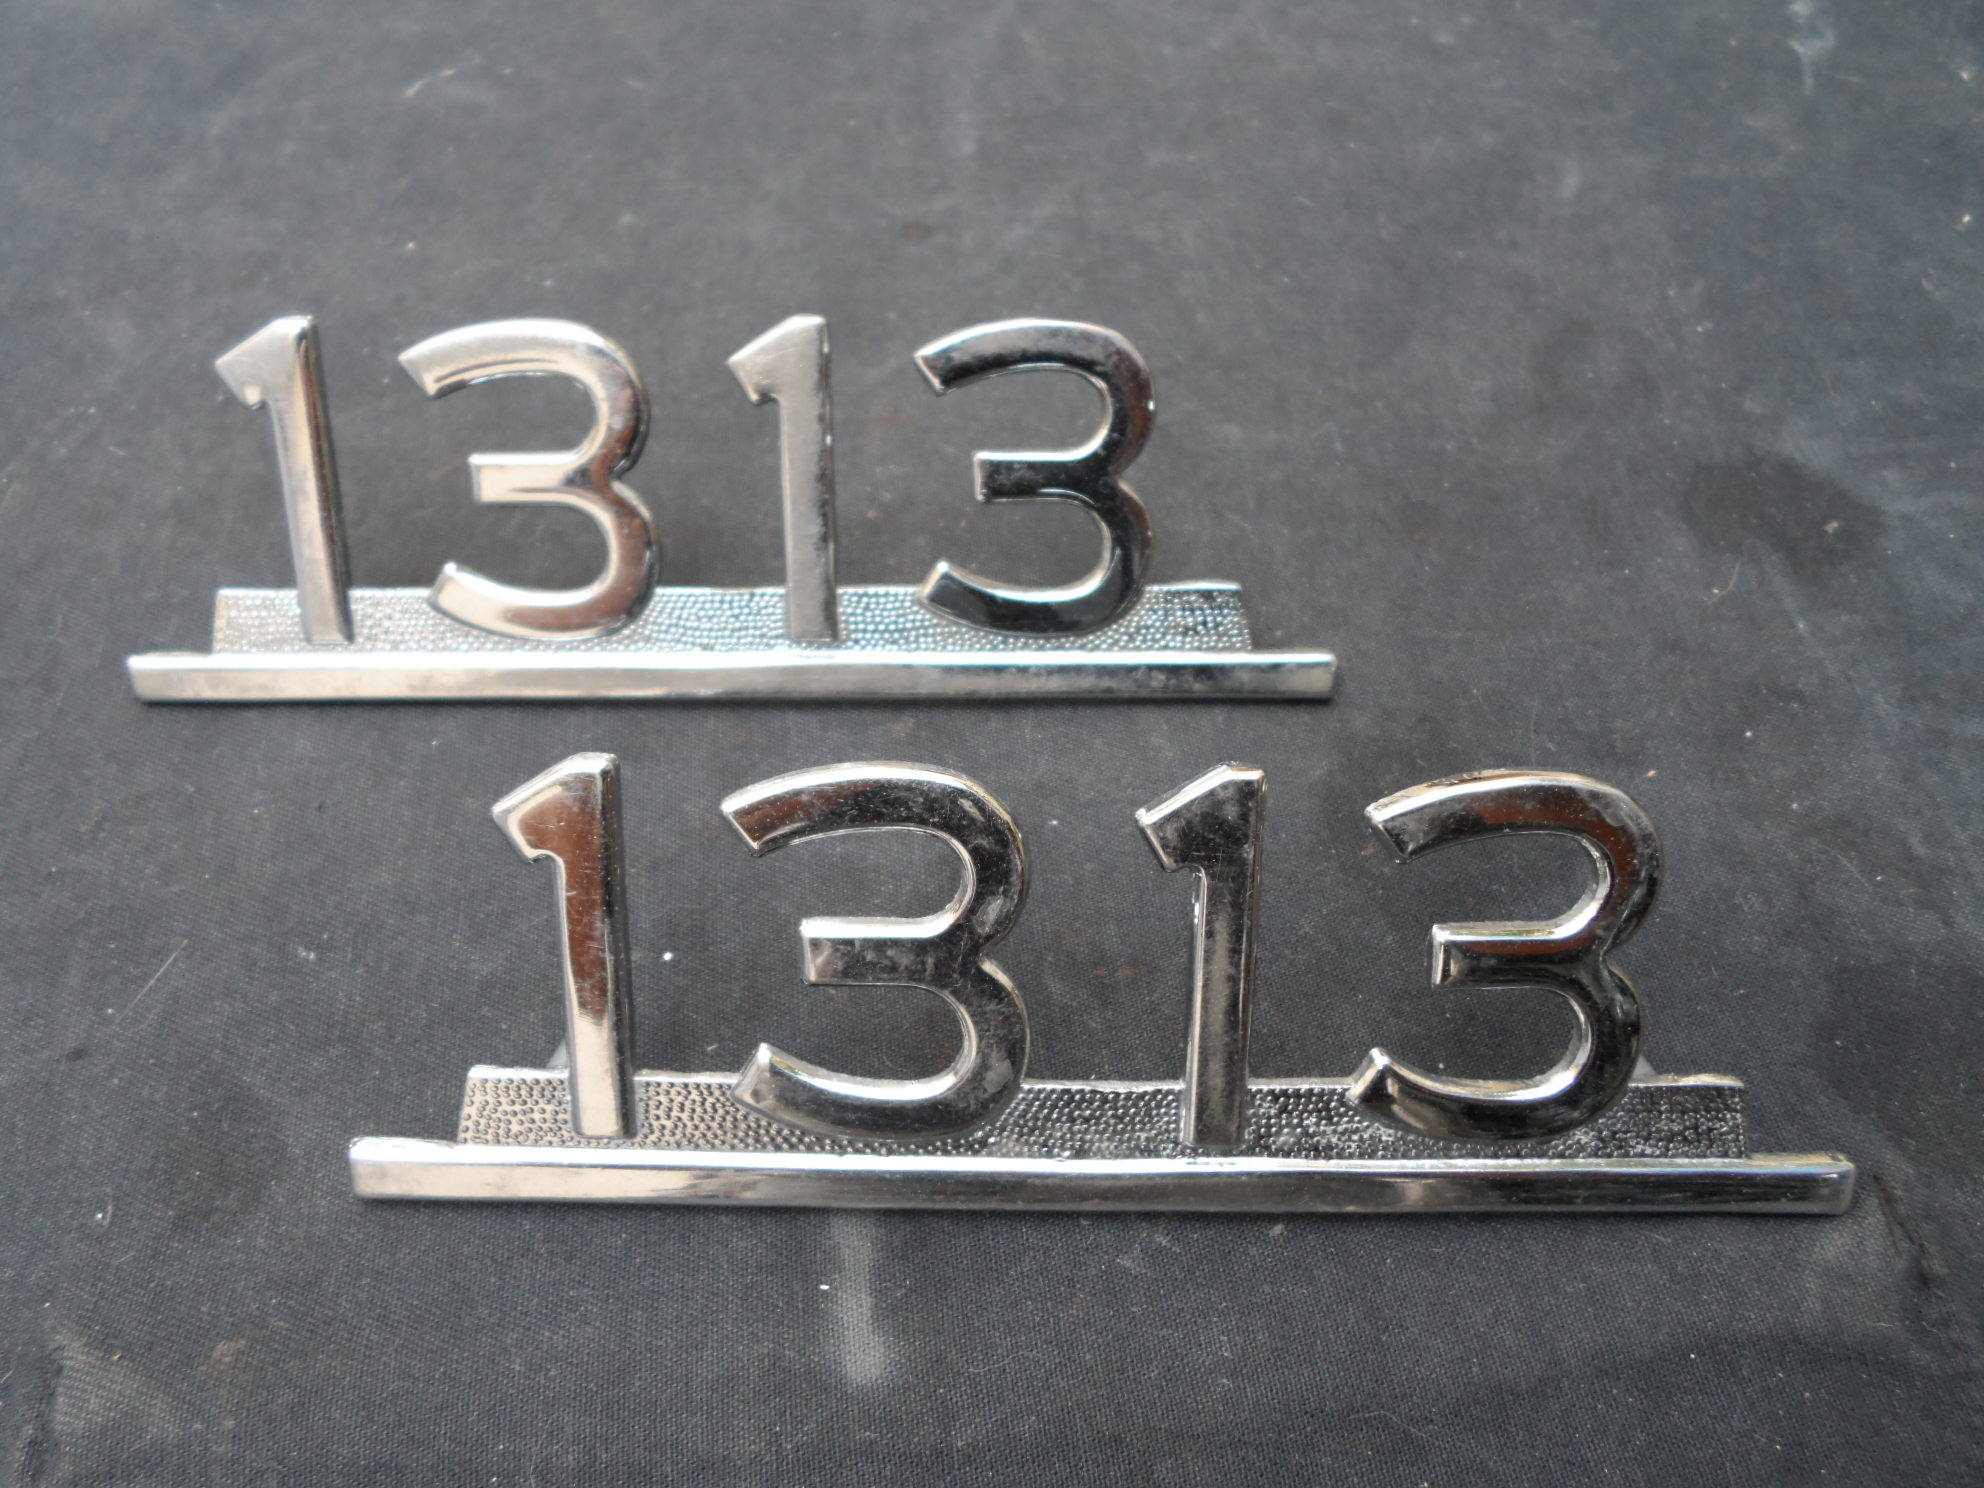 Par Emblema 1313 Caminho Mercedes Bens Antigo